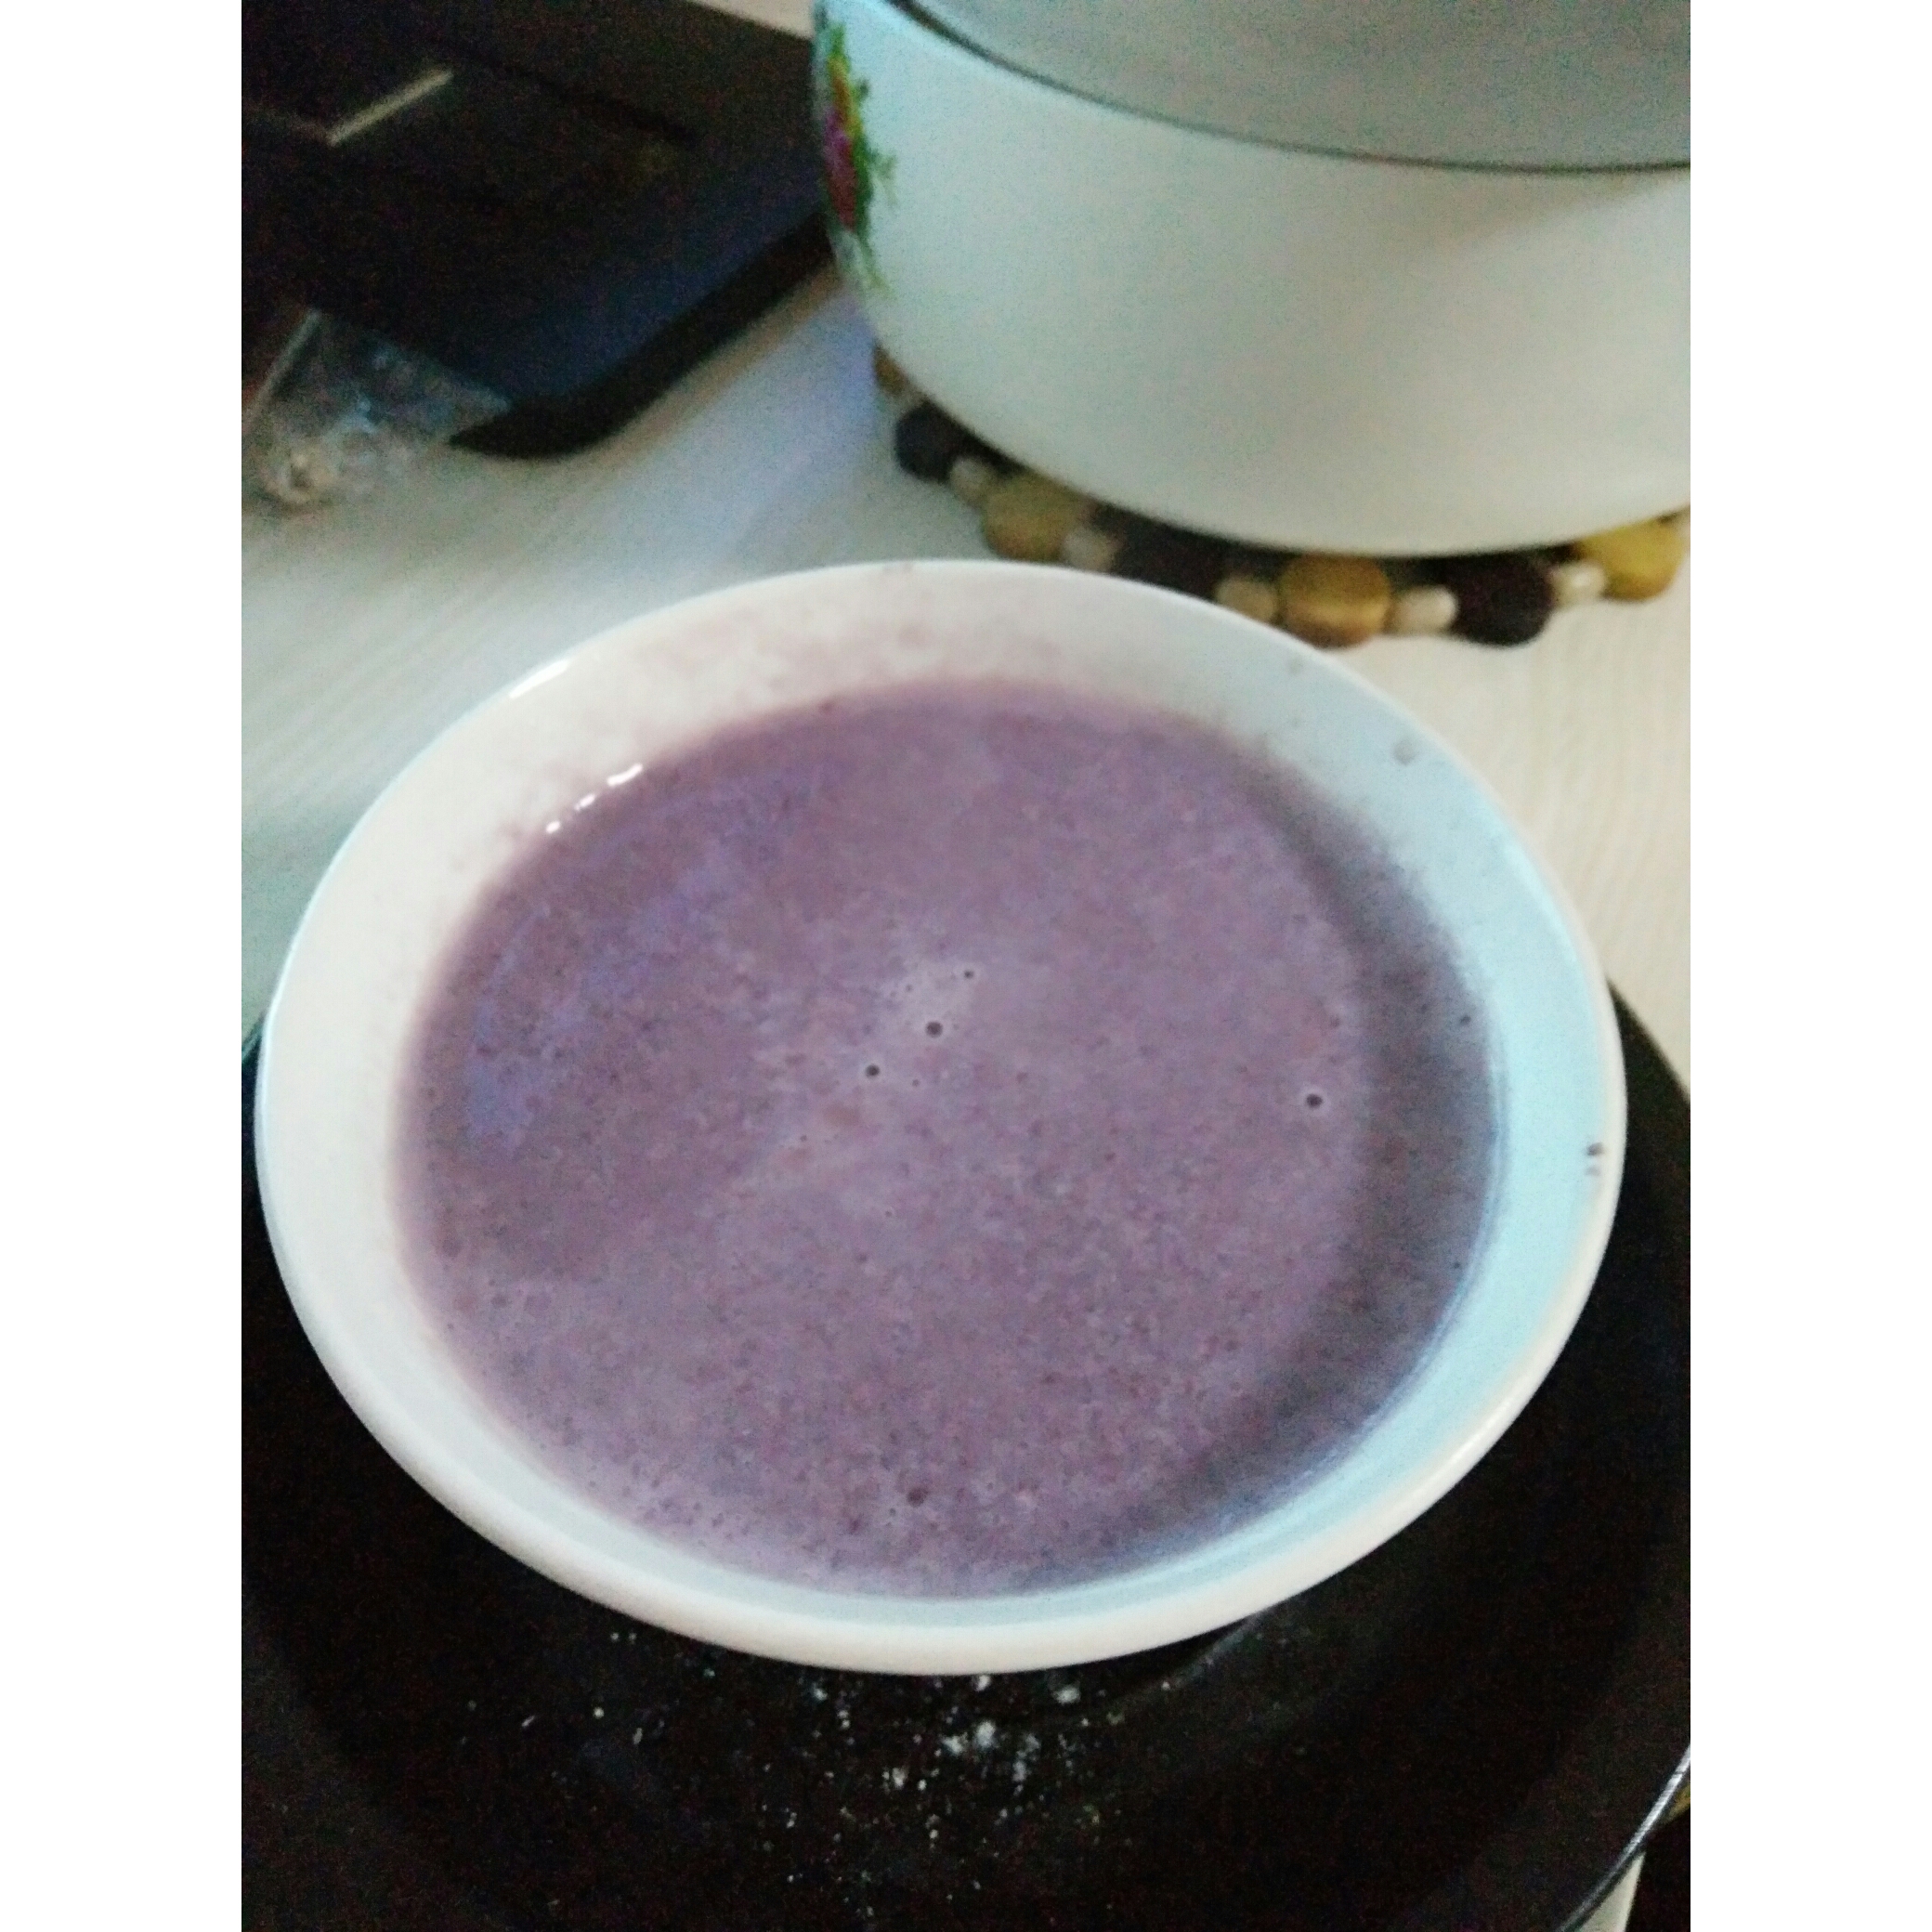 紫薯牛奶饮